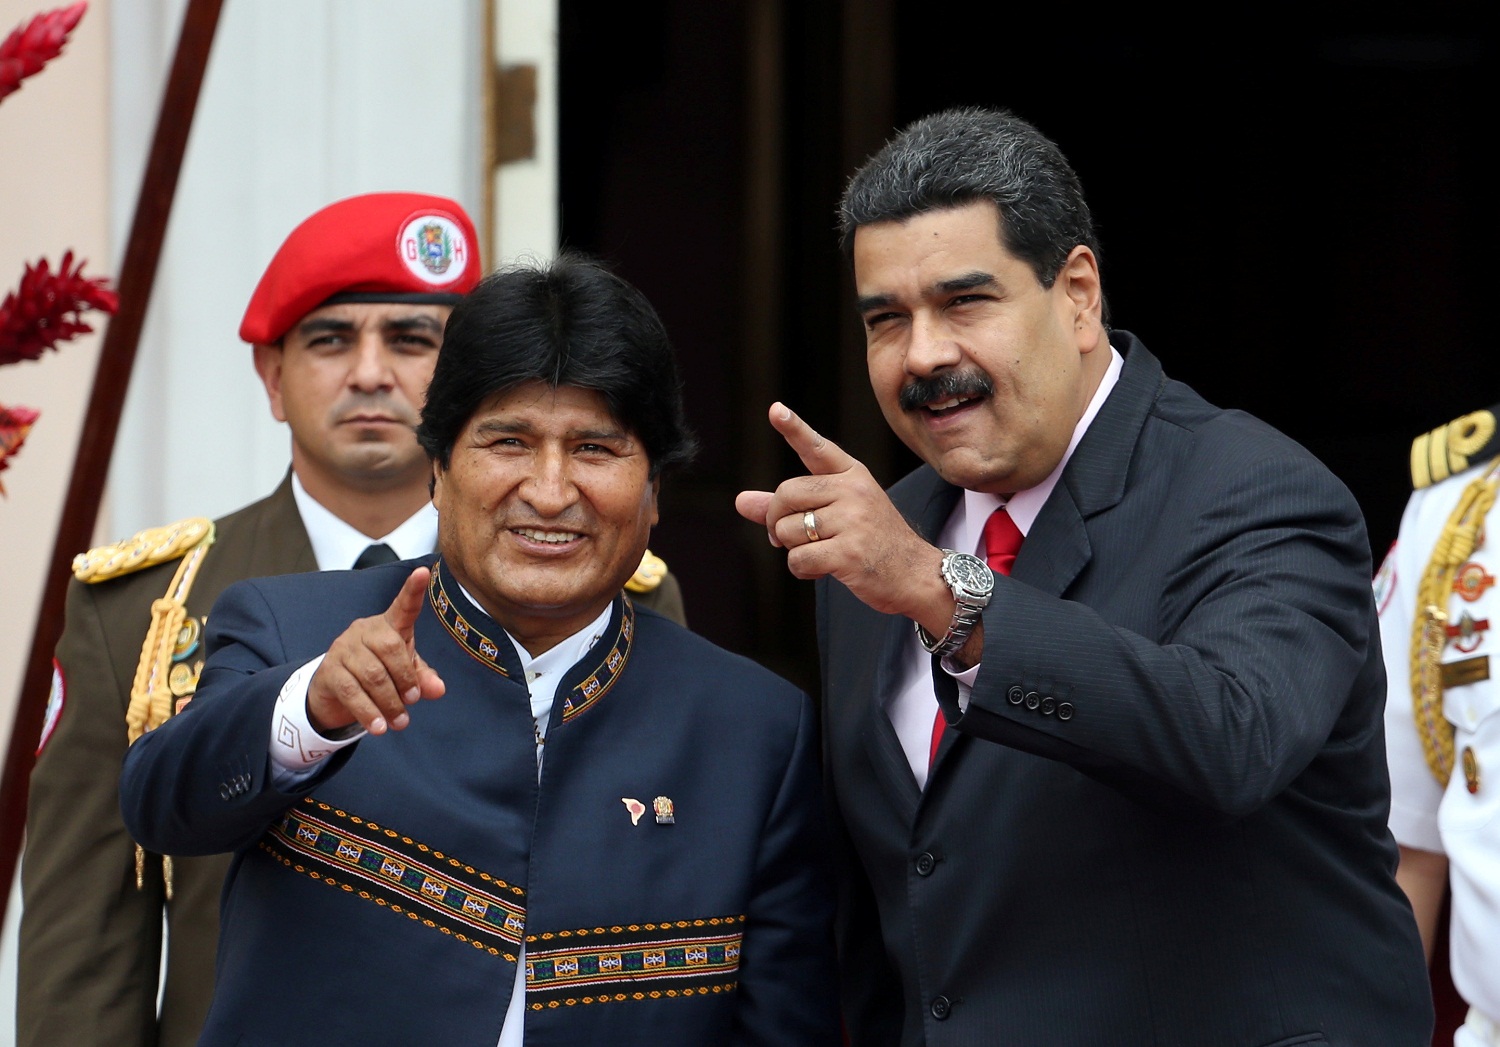 Evo Morales reaparece en Venezuela tras paso por Cuba para tratar problema de salud